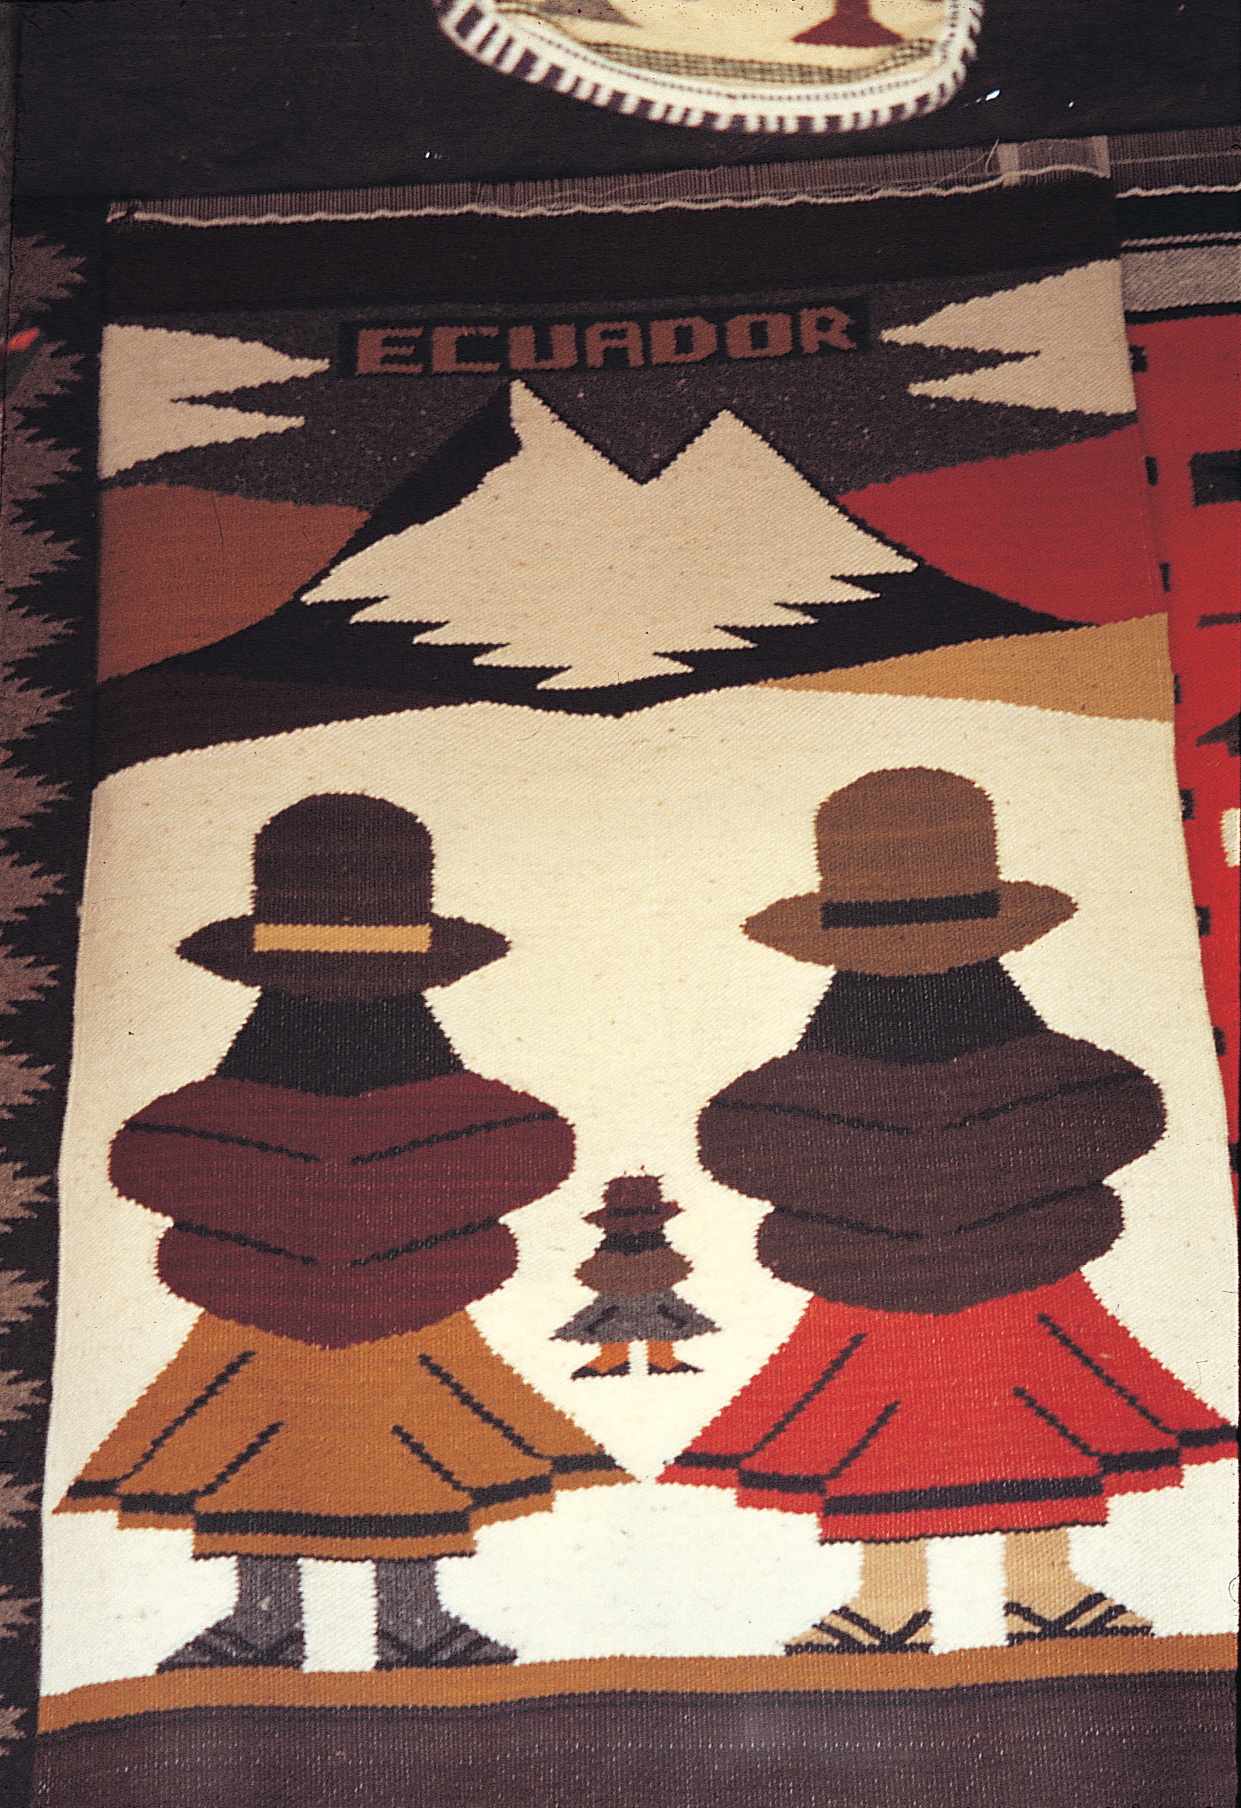 Ecuador textiles from Otavalo market